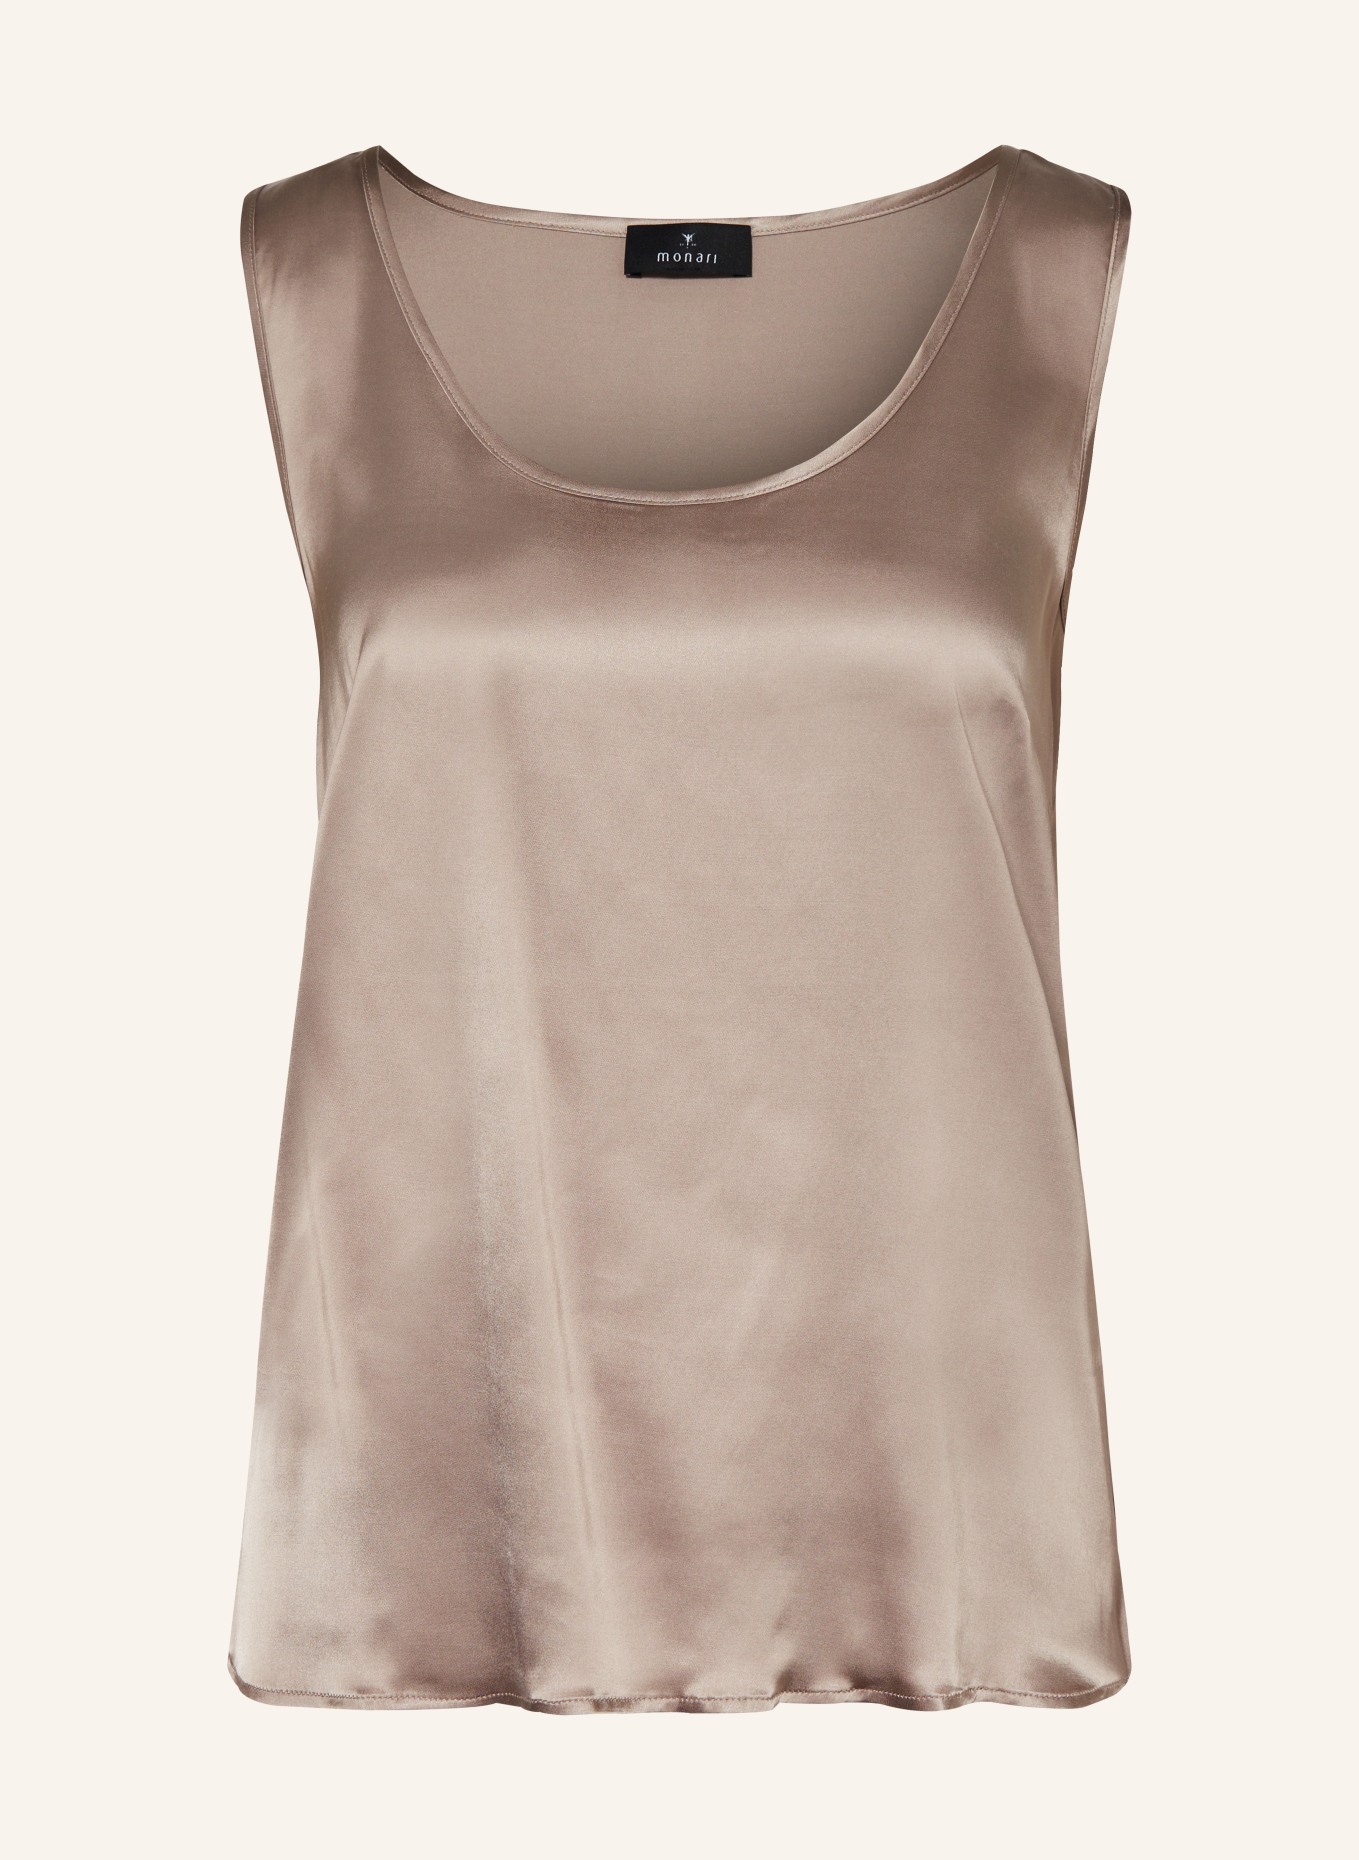 monari Blouse top, Color: BEIGE (Image 1)